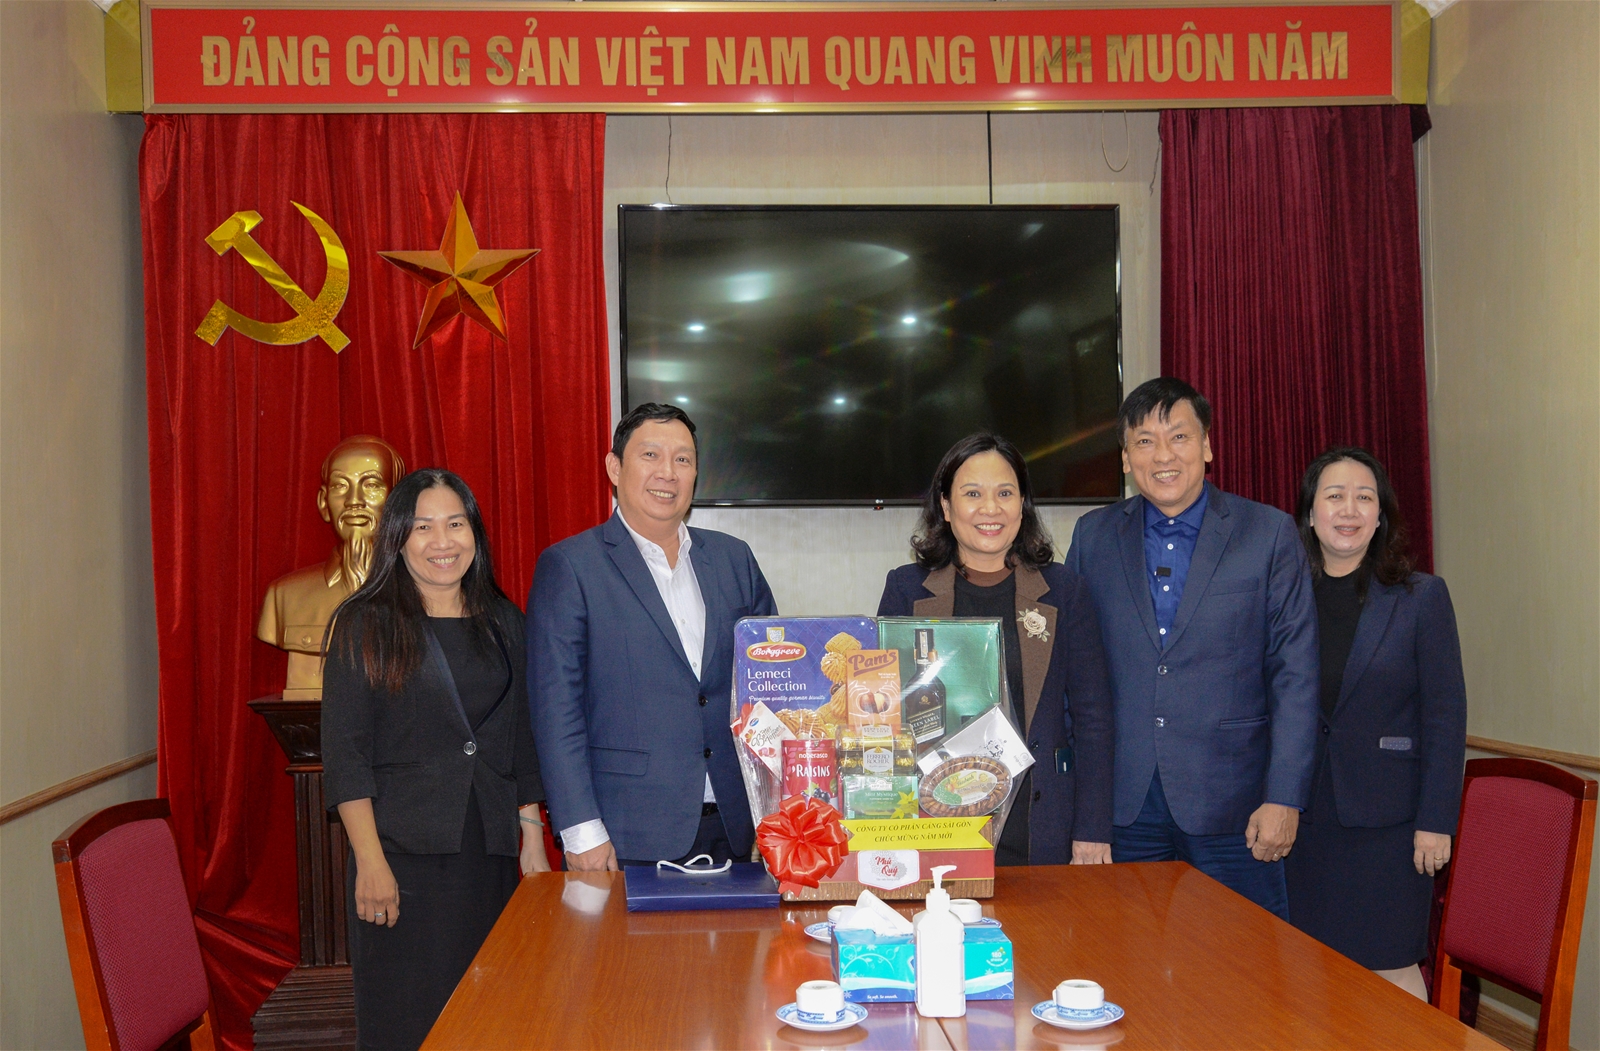 Công ty Cổ phần Cảng Sài Gòn thăm Khu di tích Phủ Chủ tịch nhân dịp Tết Nguyên đán Nhâm Dần 2022 (ngày 11/01/2022)